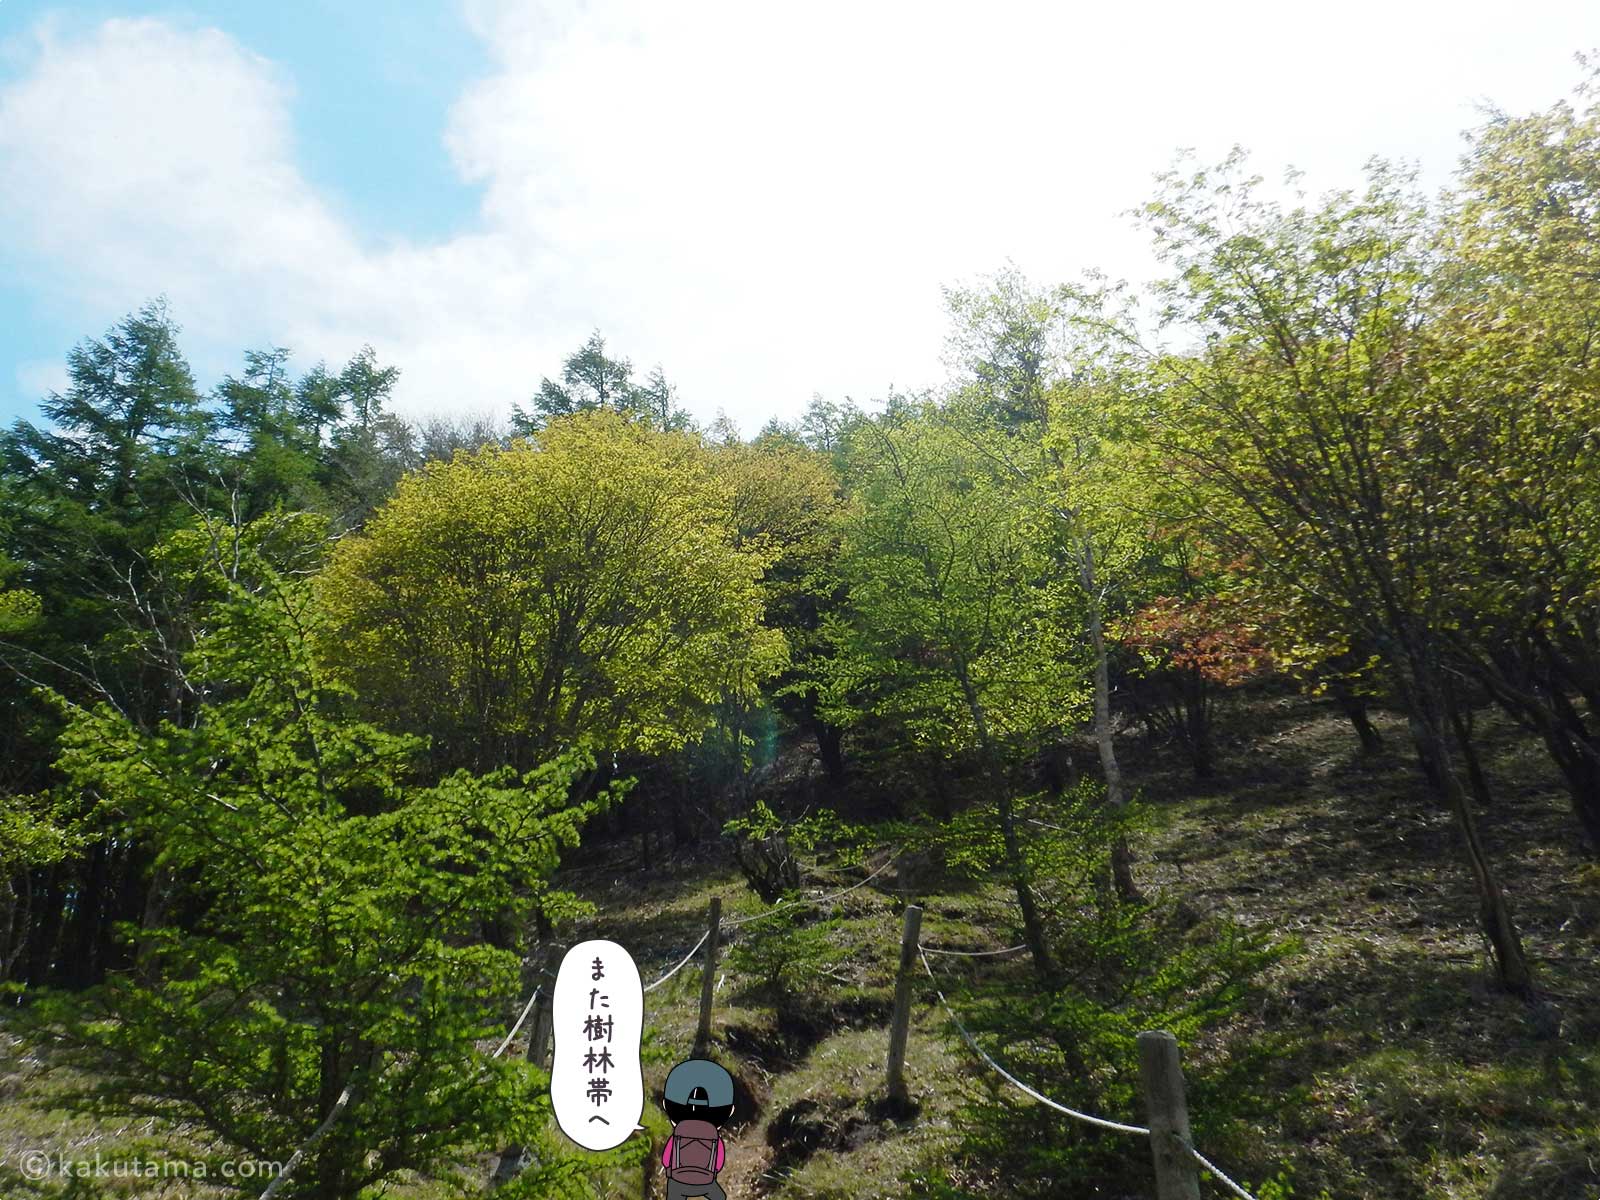 丸川荘から大菩薩嶺へ向かって登る1